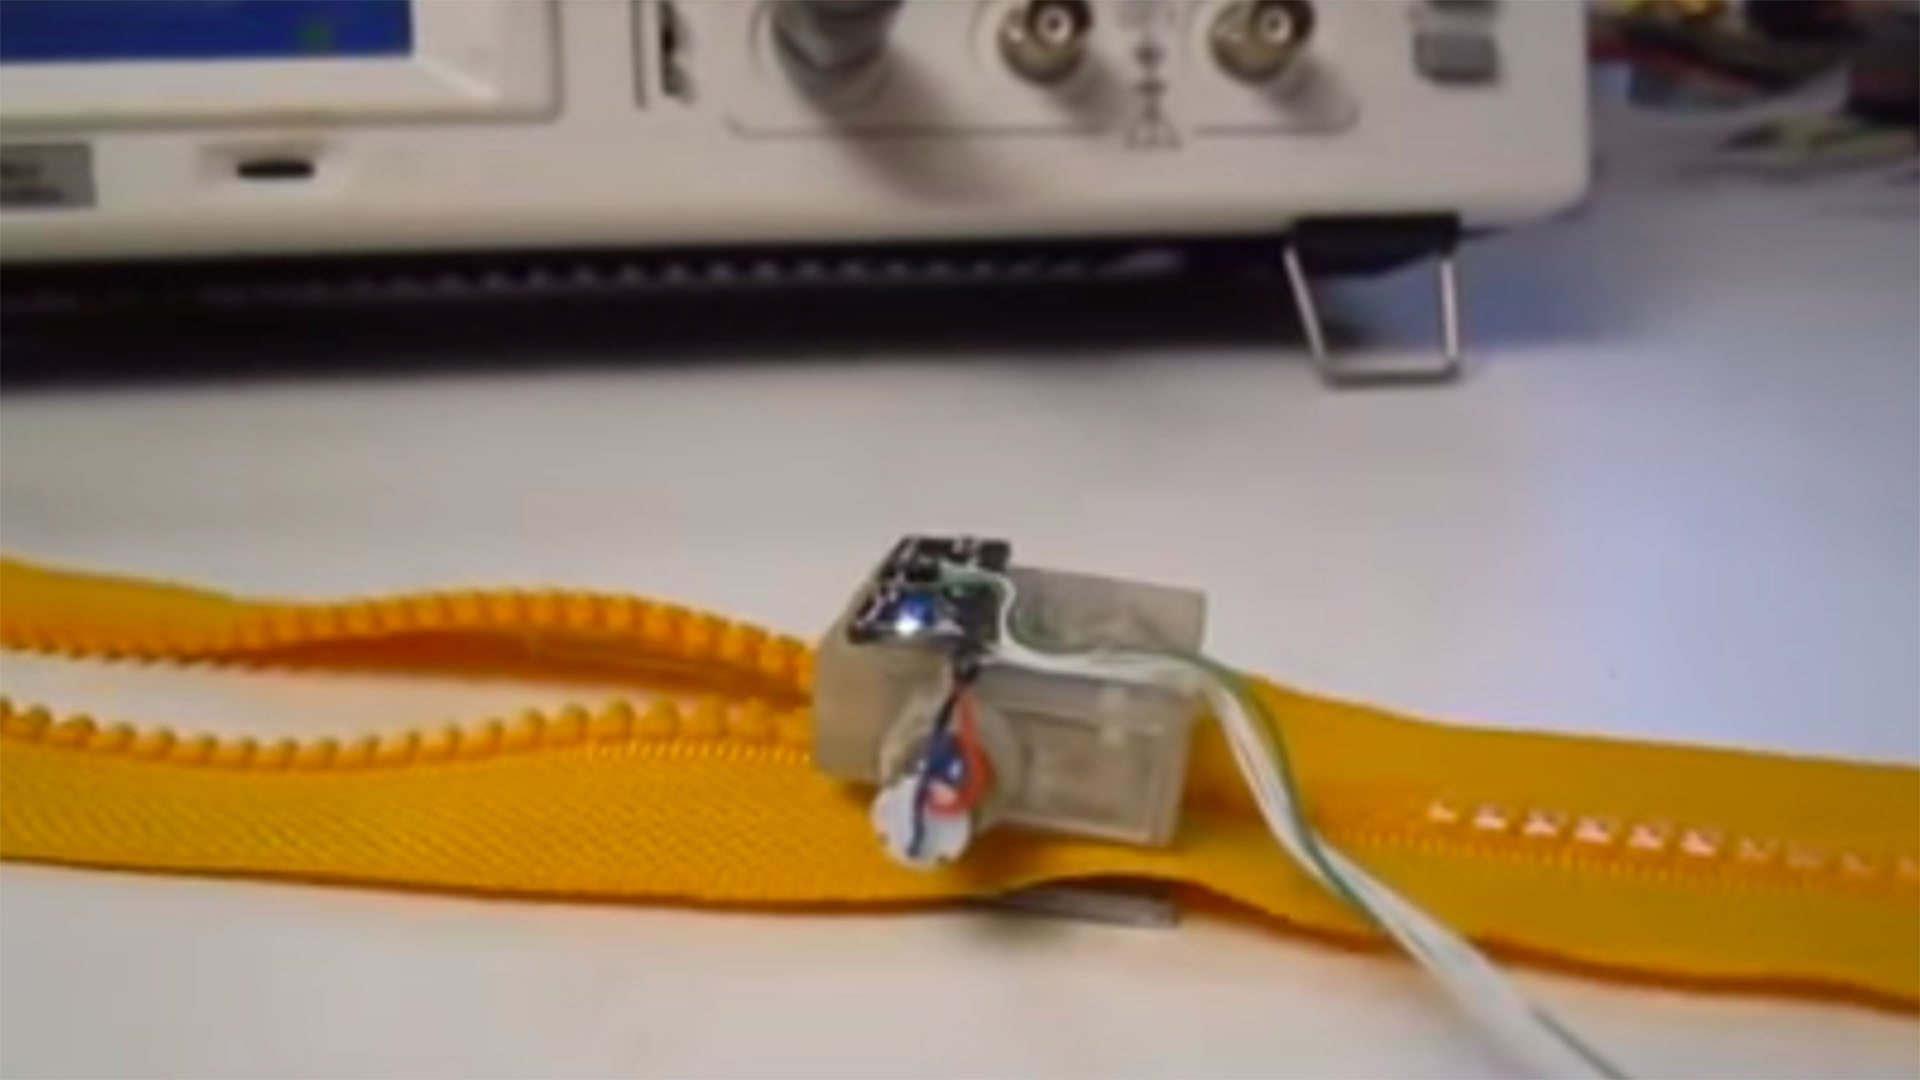 Meet Zipperbot, the Robot Who Zips Zippers